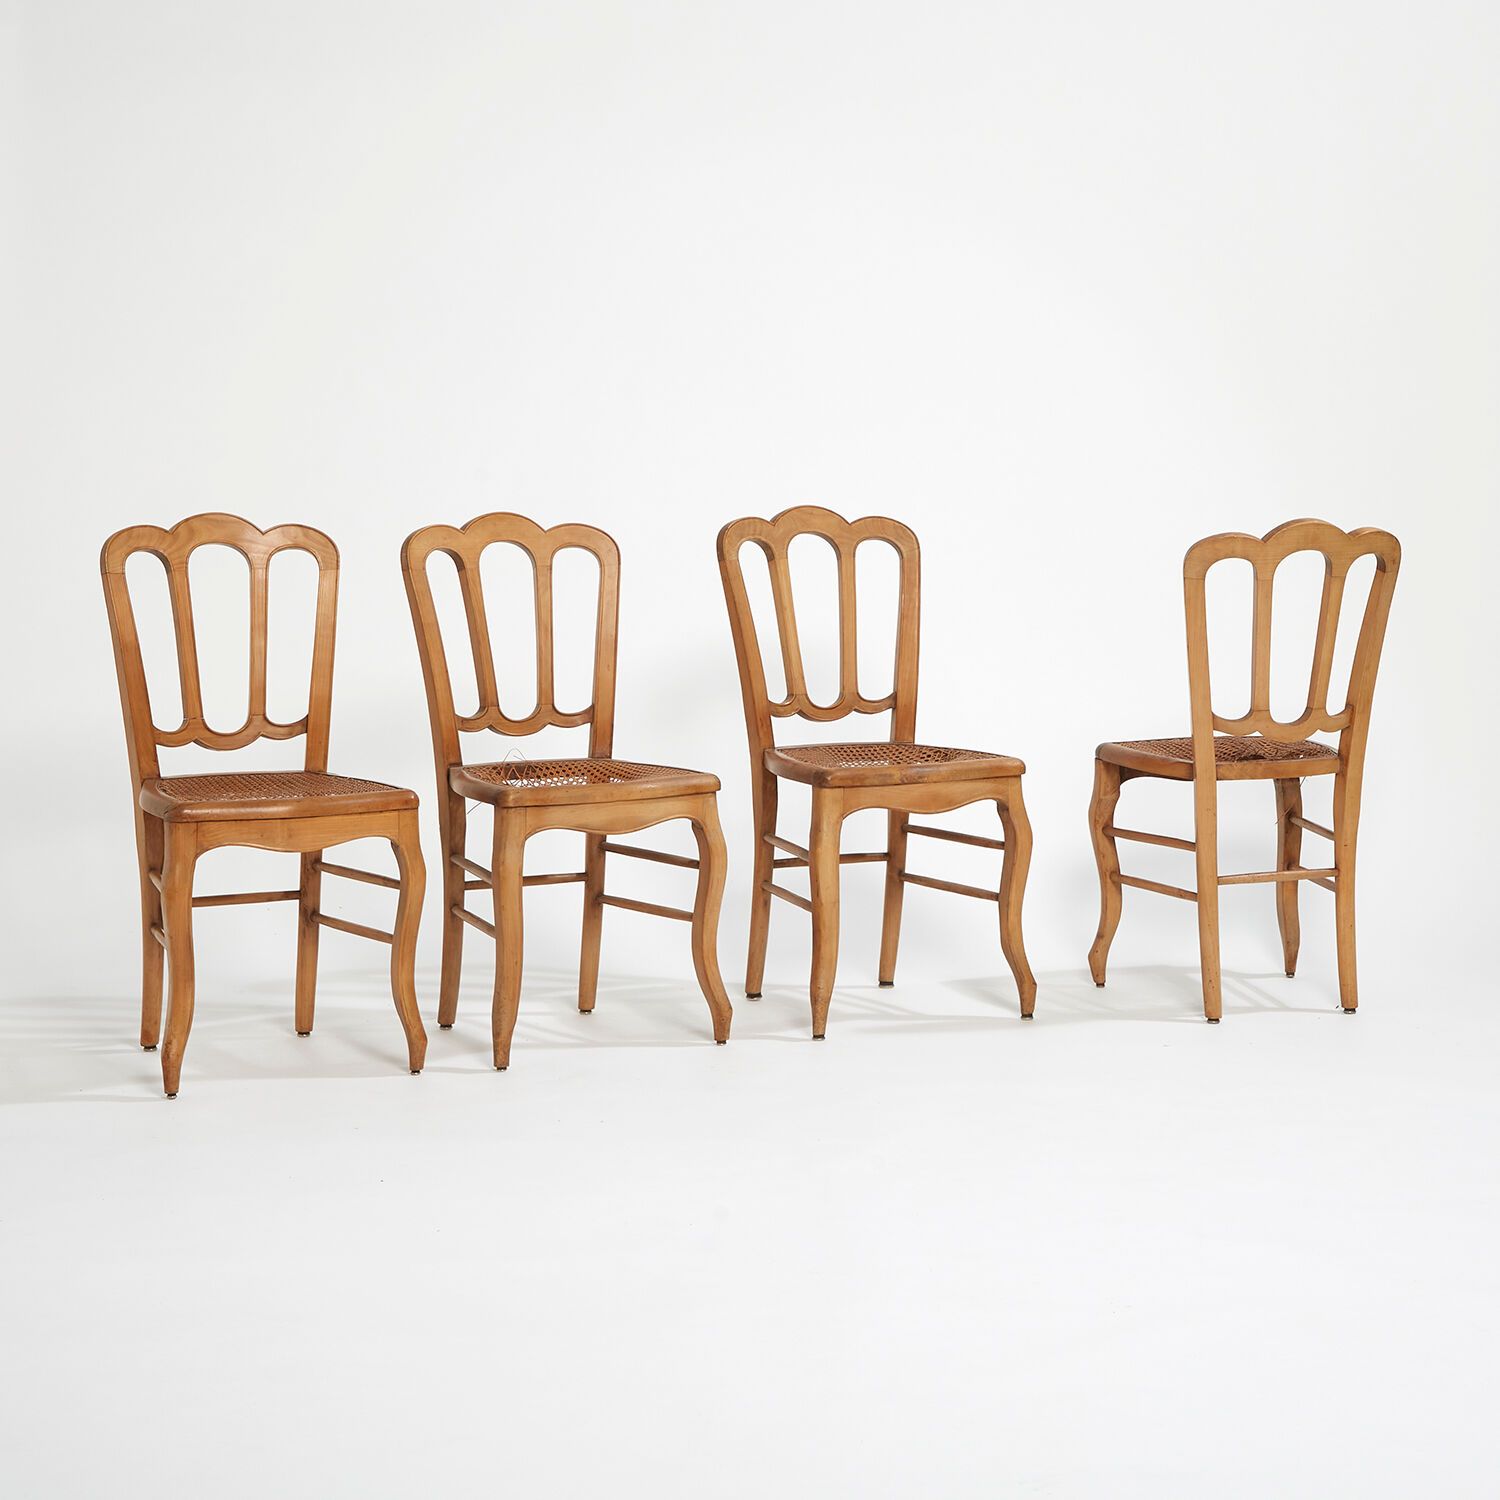 XX SIÈCLE XX SIÈCLE
Suite de 6 chaises en frêne, assises en cannage. (assises en&hellip;